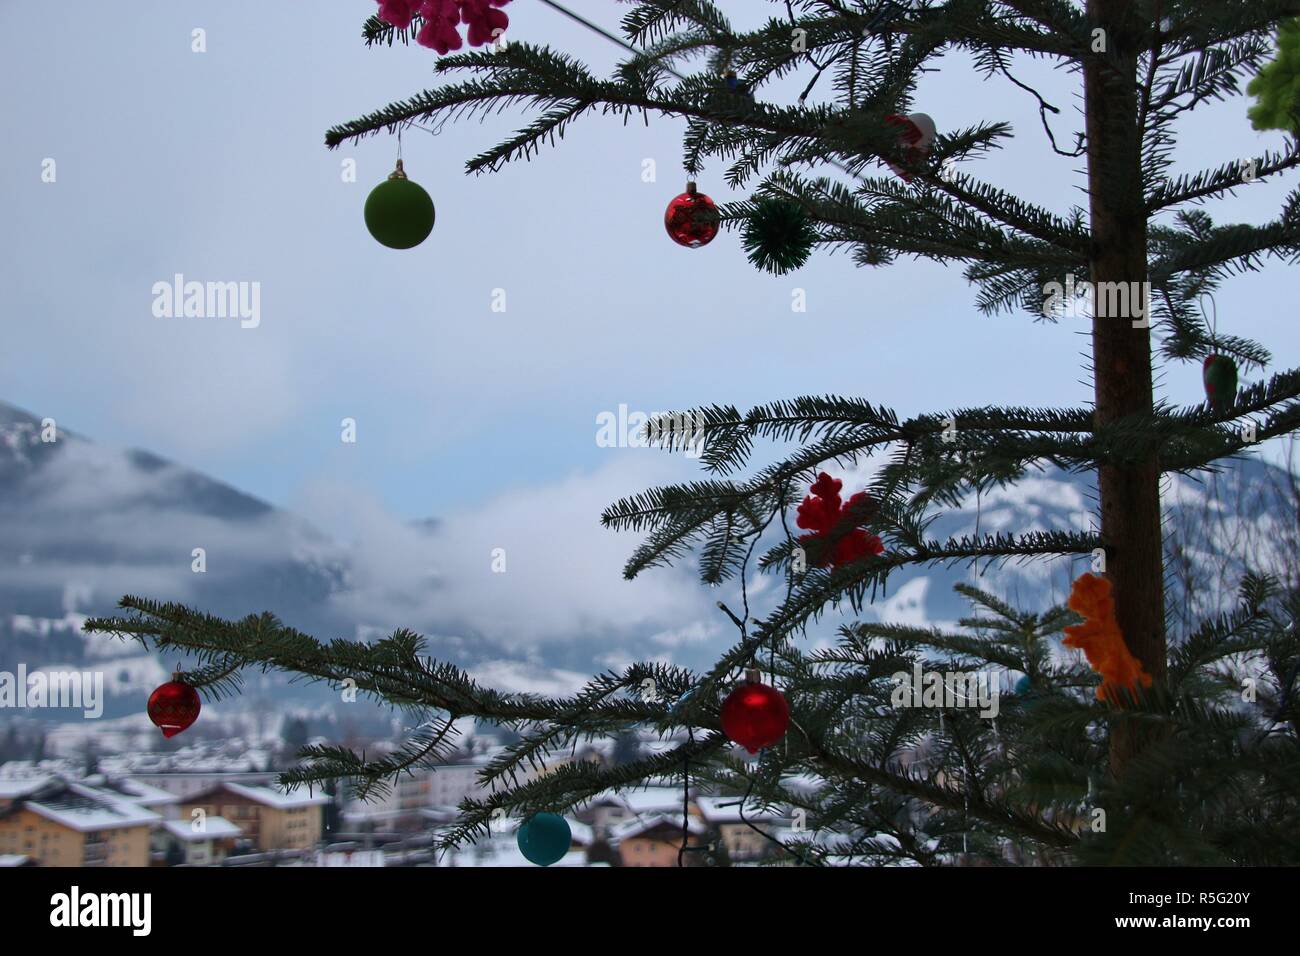 Weihnachten in den Bergen: eine Tanne in der Natur, mit Weihnachtsdekoration. Blick auf Schuttdorf Bezirk und die Berge. Zell am See, Österreich, Europa. Stockfoto